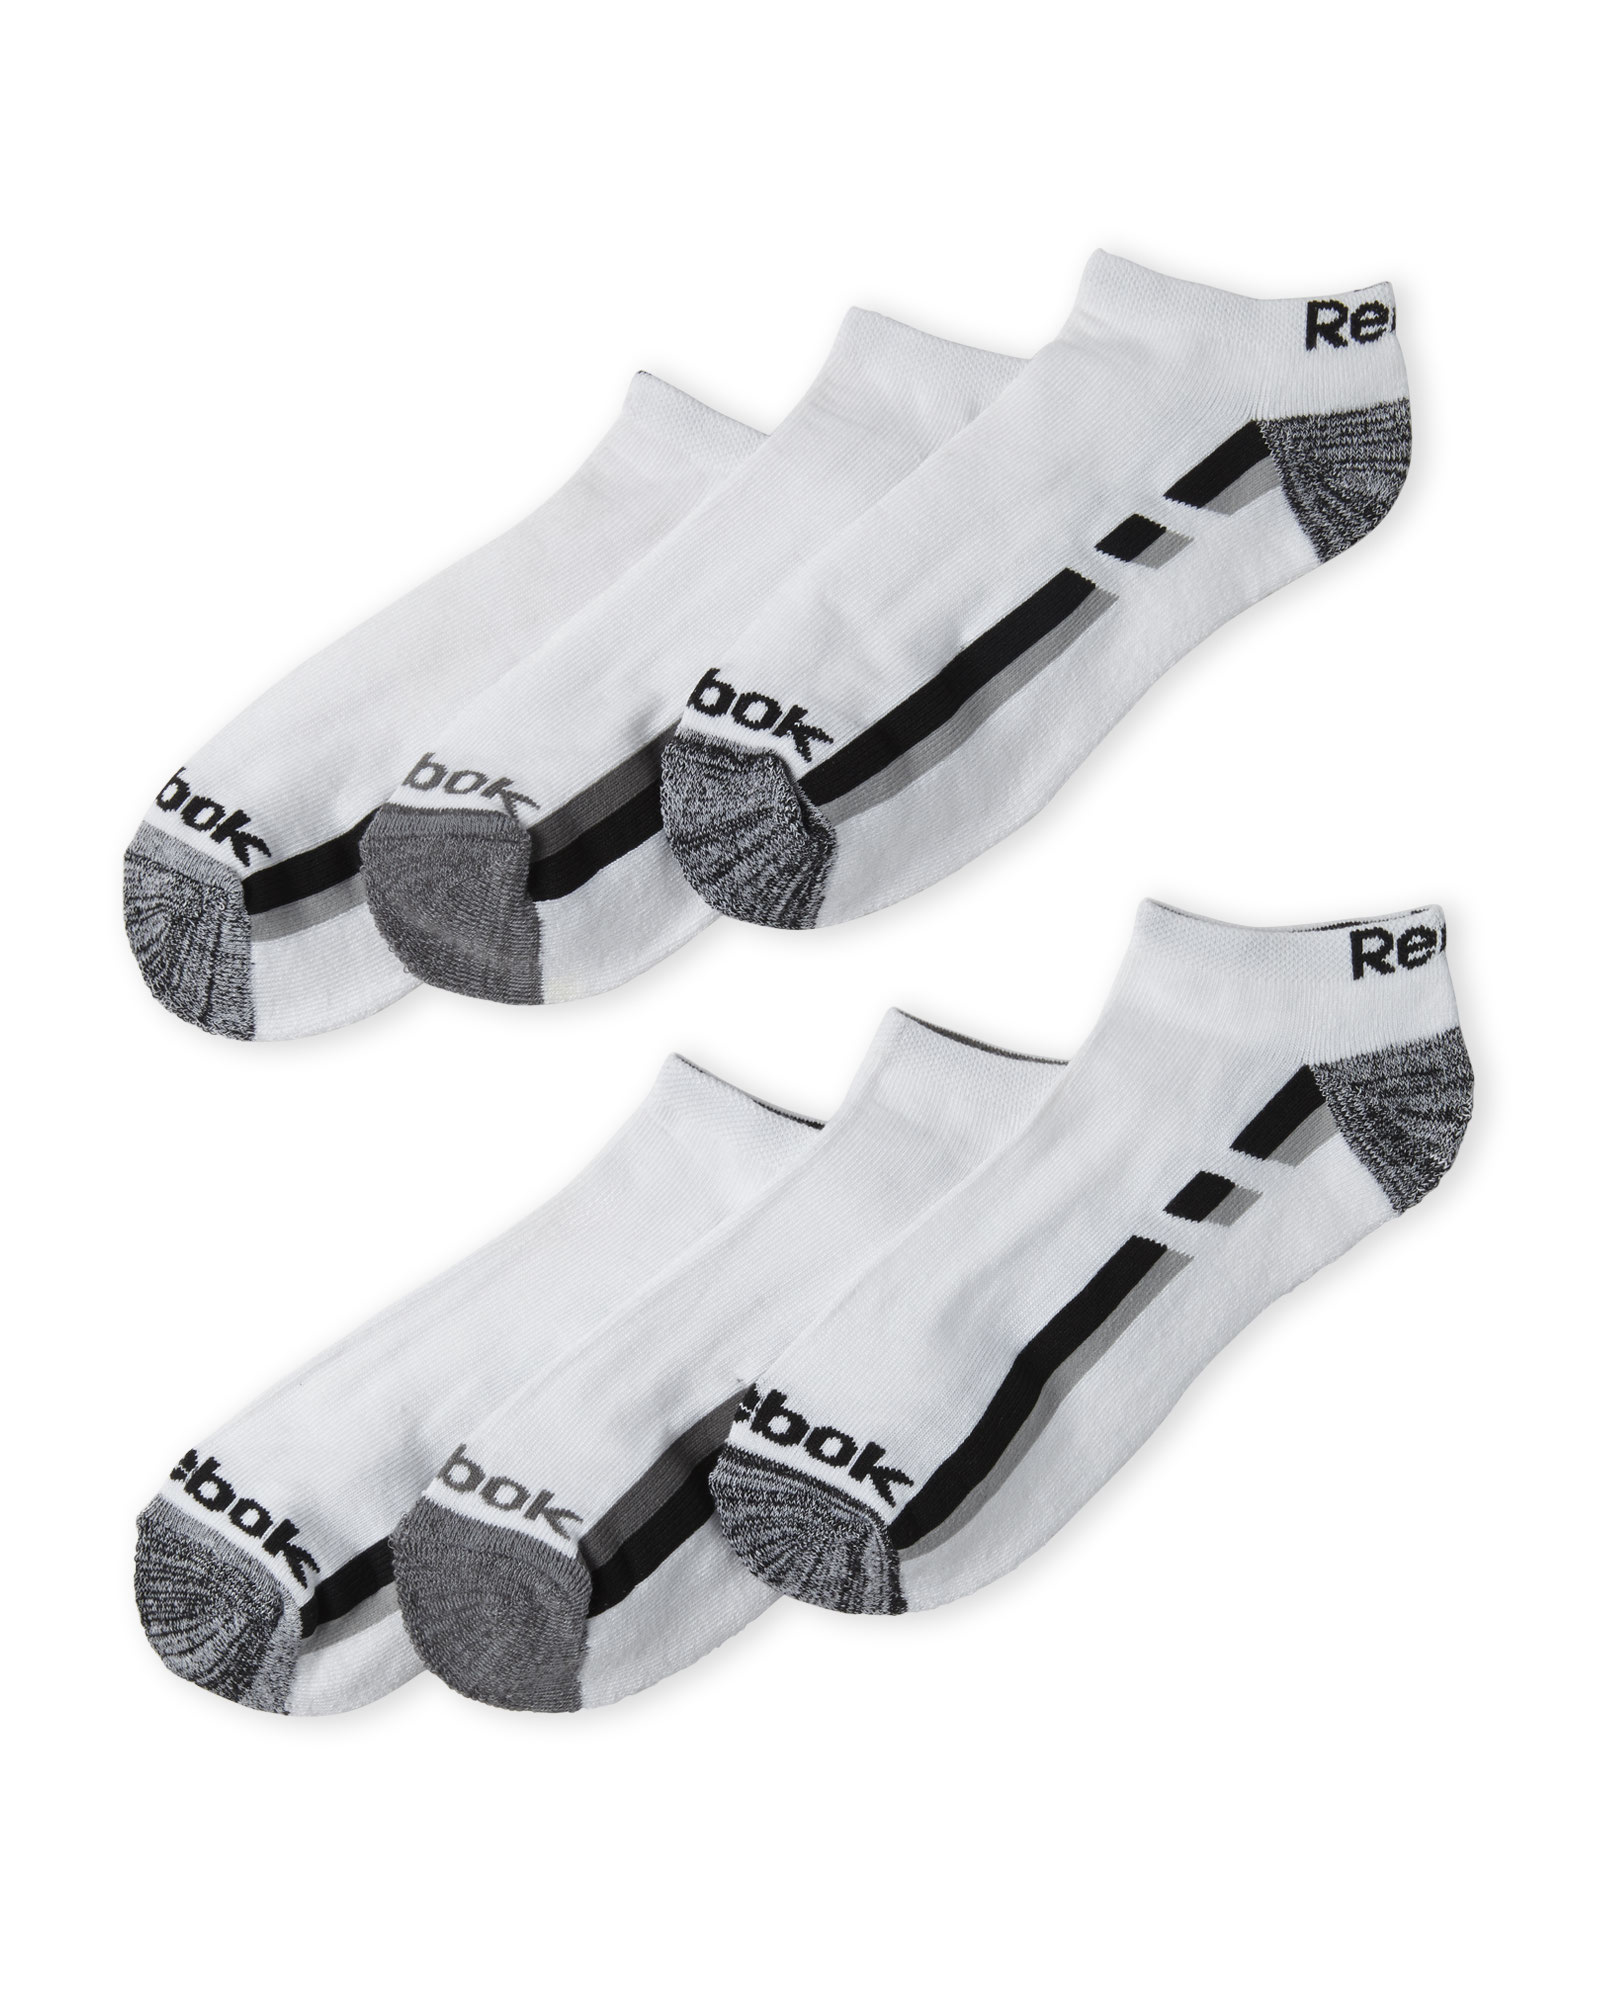 reebok performance training socks